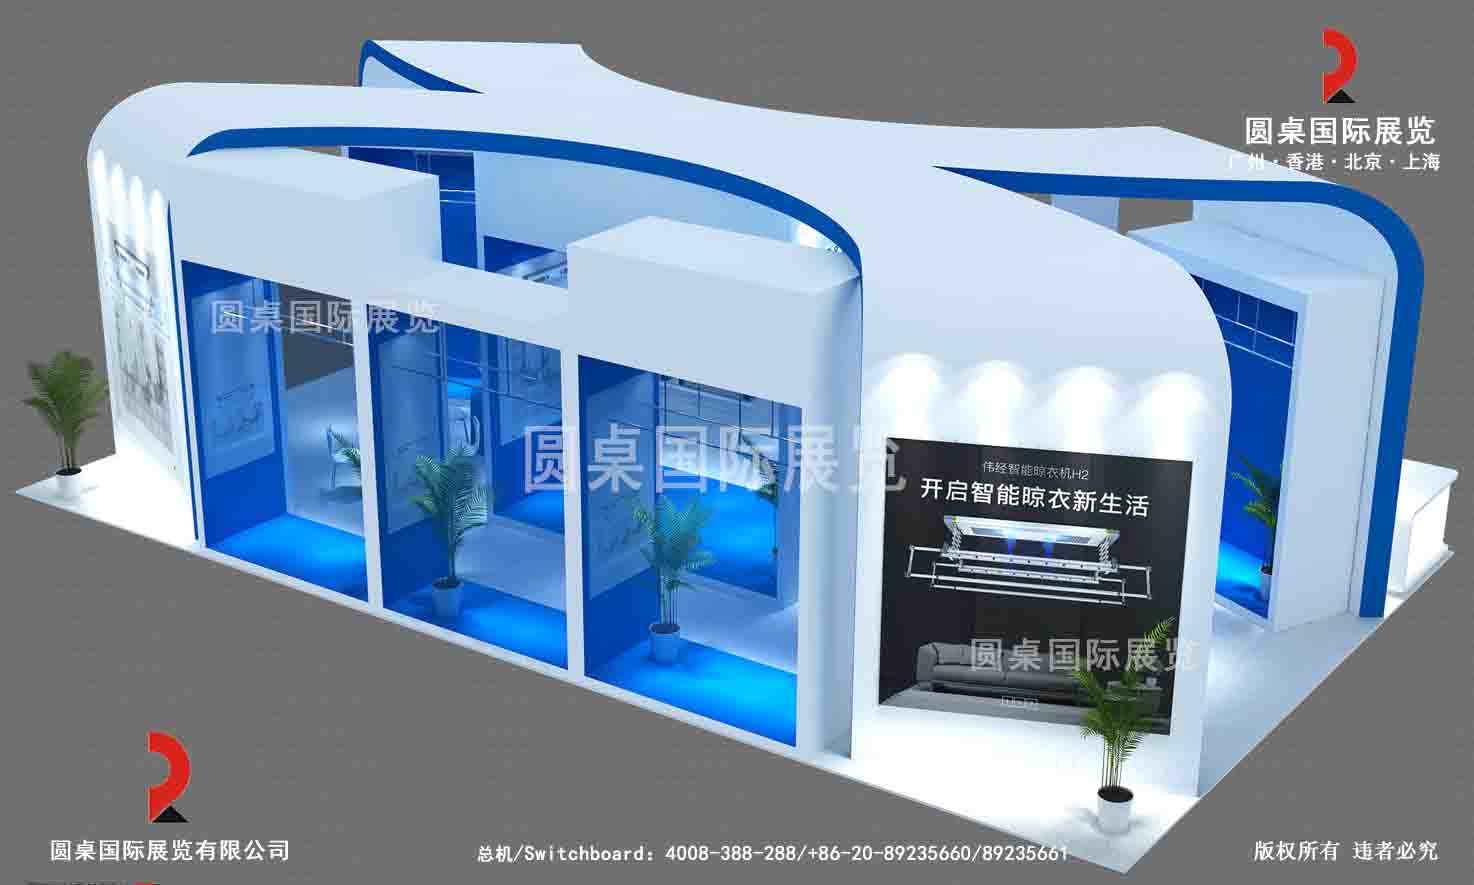 广州建博会展台设计中，有哪些环保材料和节能技术可以采用？